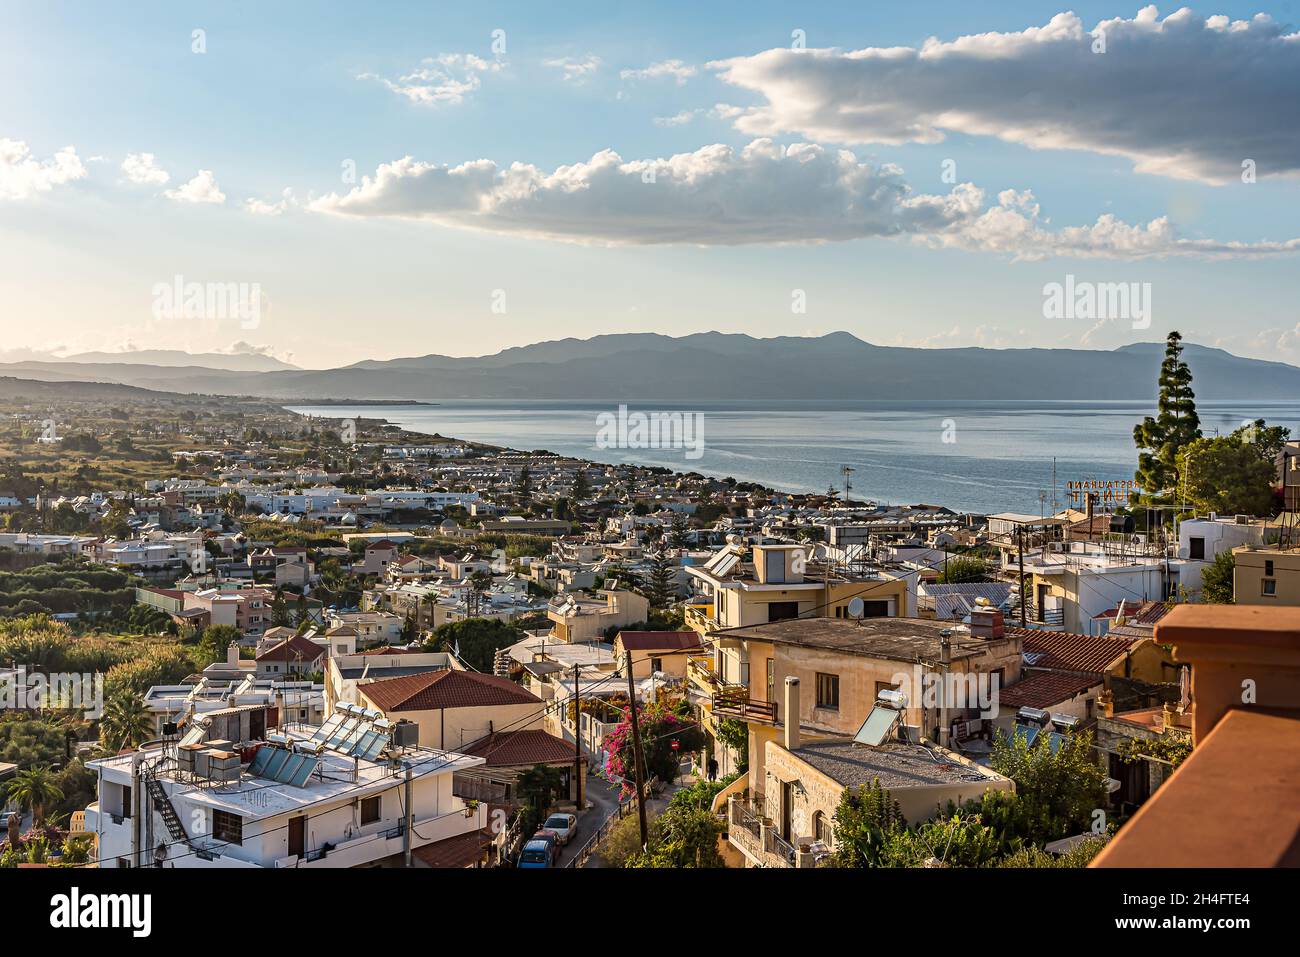 Platanias villaggio e baia da un alto punto di vista, Creta, Grecia, 10 ottobre 2021 Foto Stock